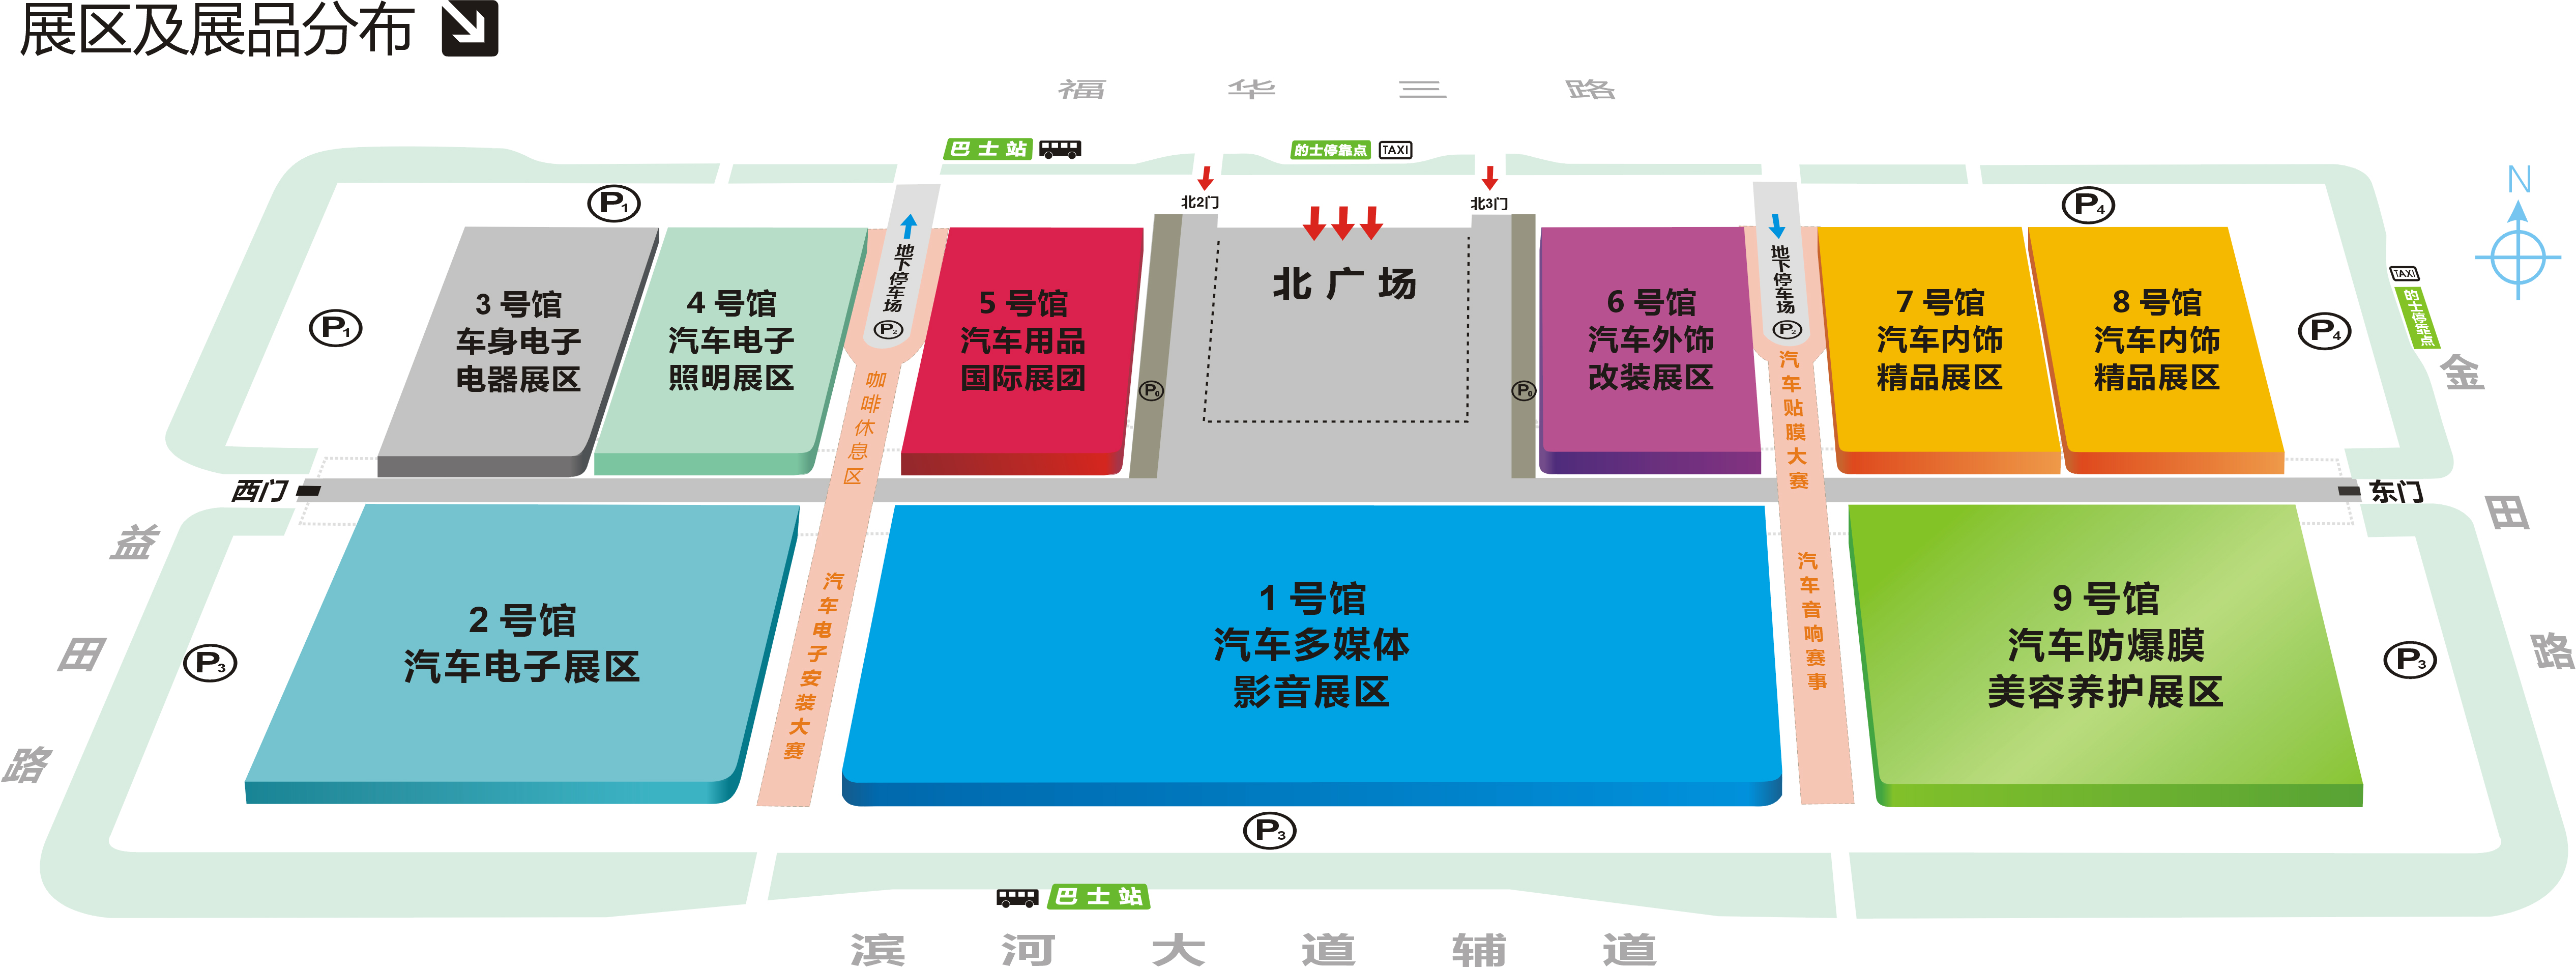 【官方新闻】AAITF 2015第十一届深圳国际汽车改装服务业展览会